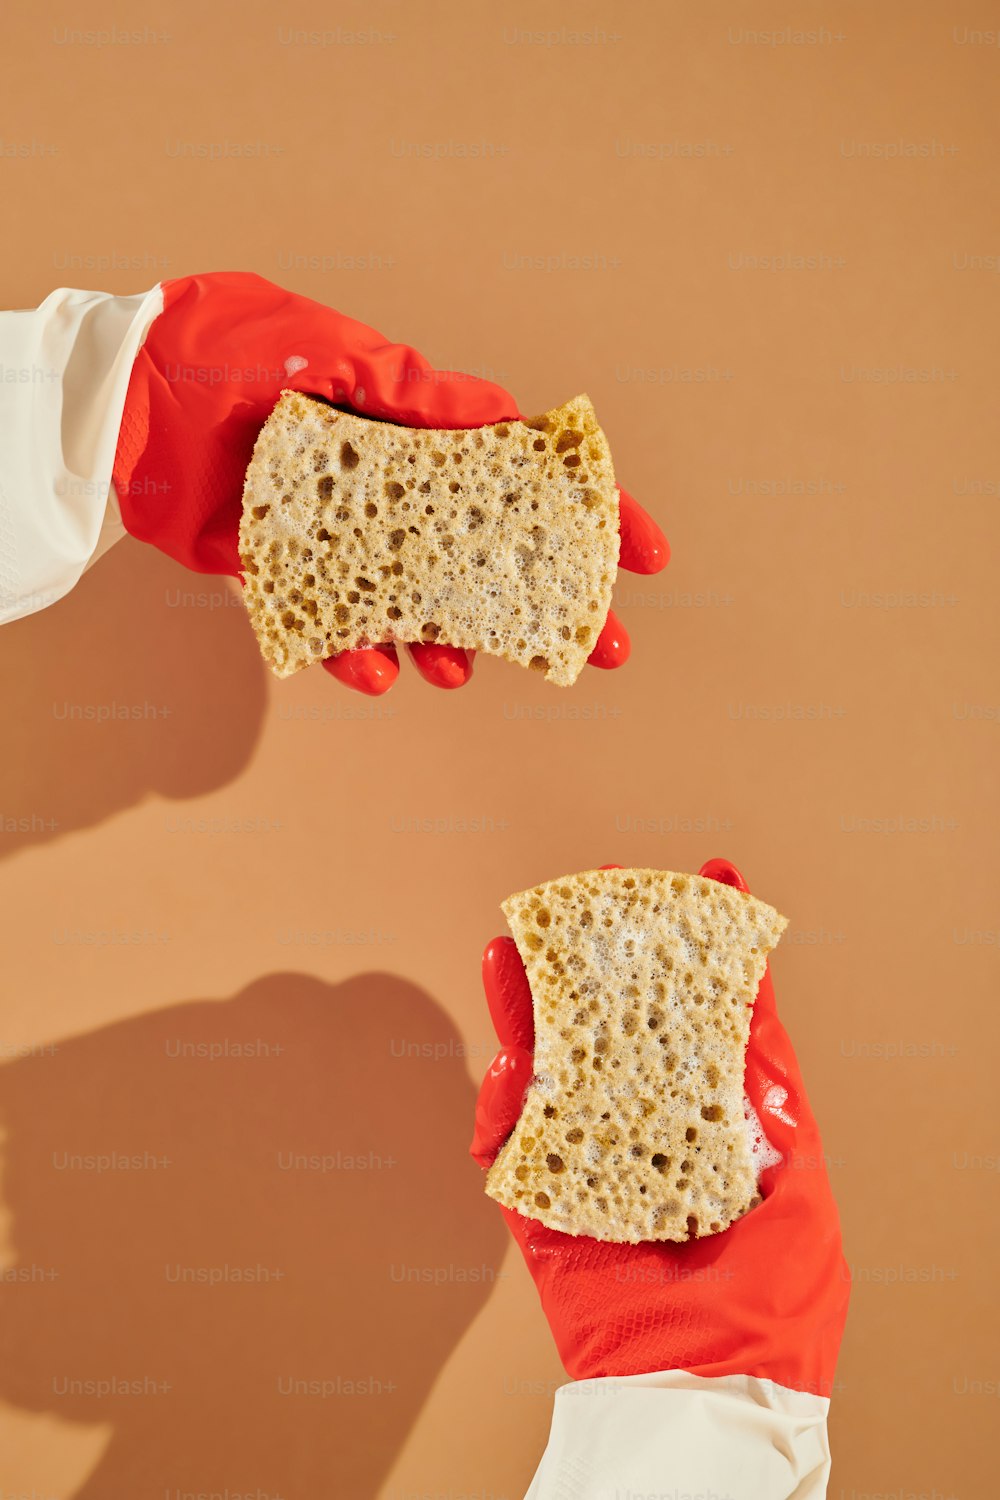 deux mains portant des gants rouges tenant un morceau de pain